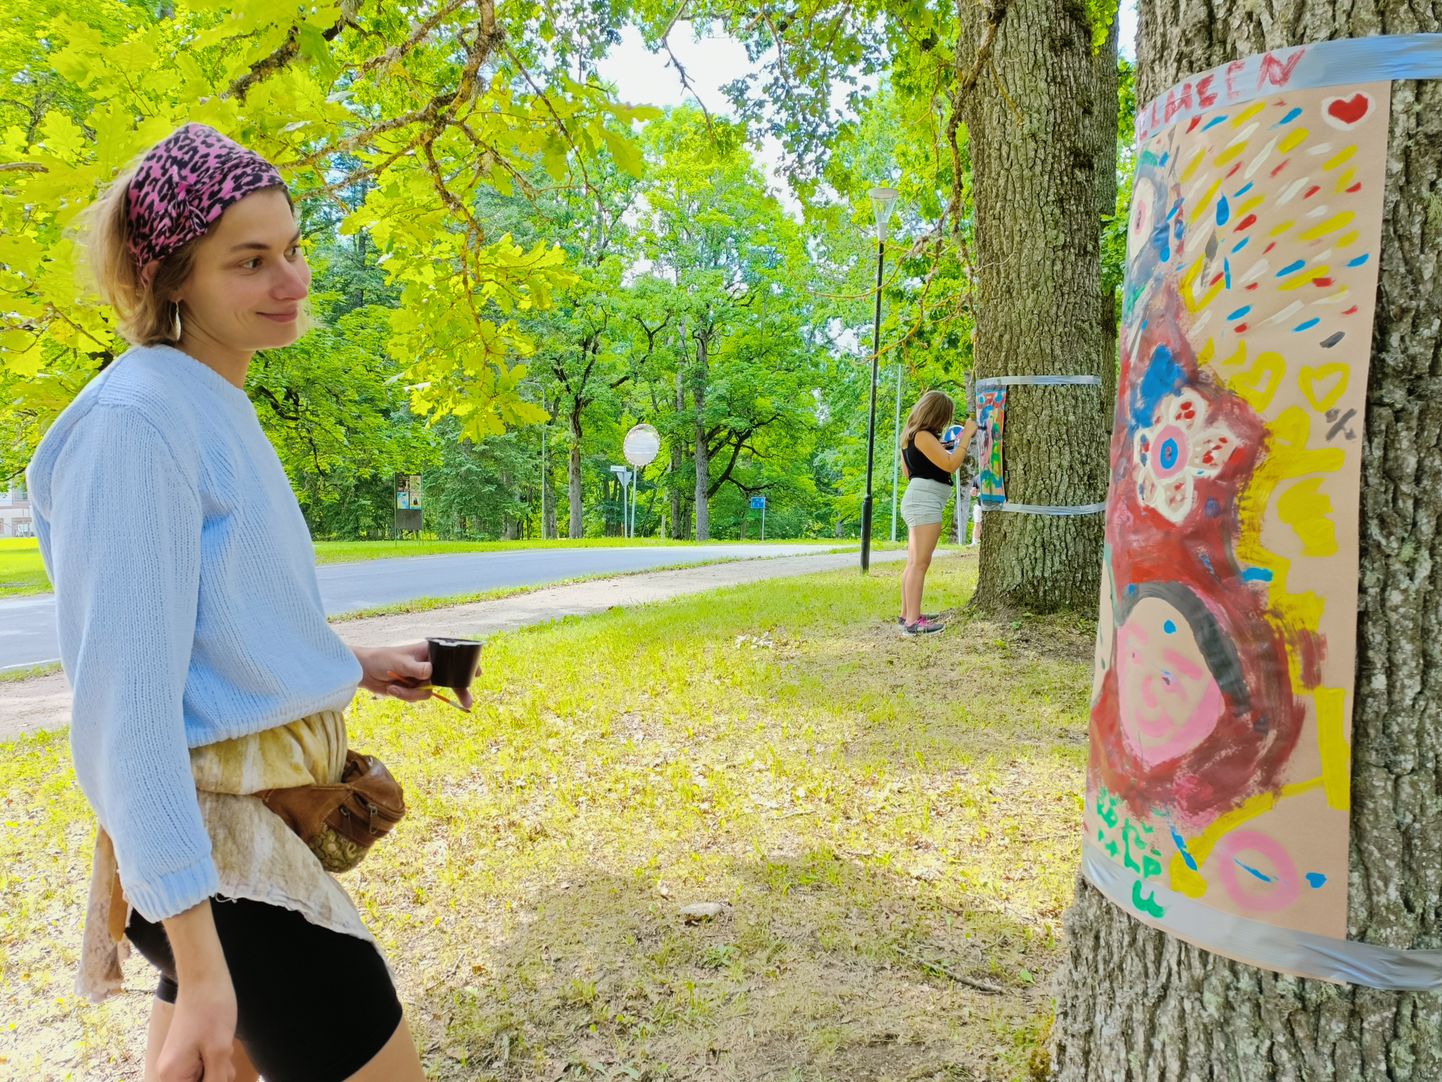 Художественная мастерская, где каждому участнику досталась путем розыгрыша одна краска, с которой они переходили от дерева к дереву, чтобы внести свой вклад в совместное творчество.